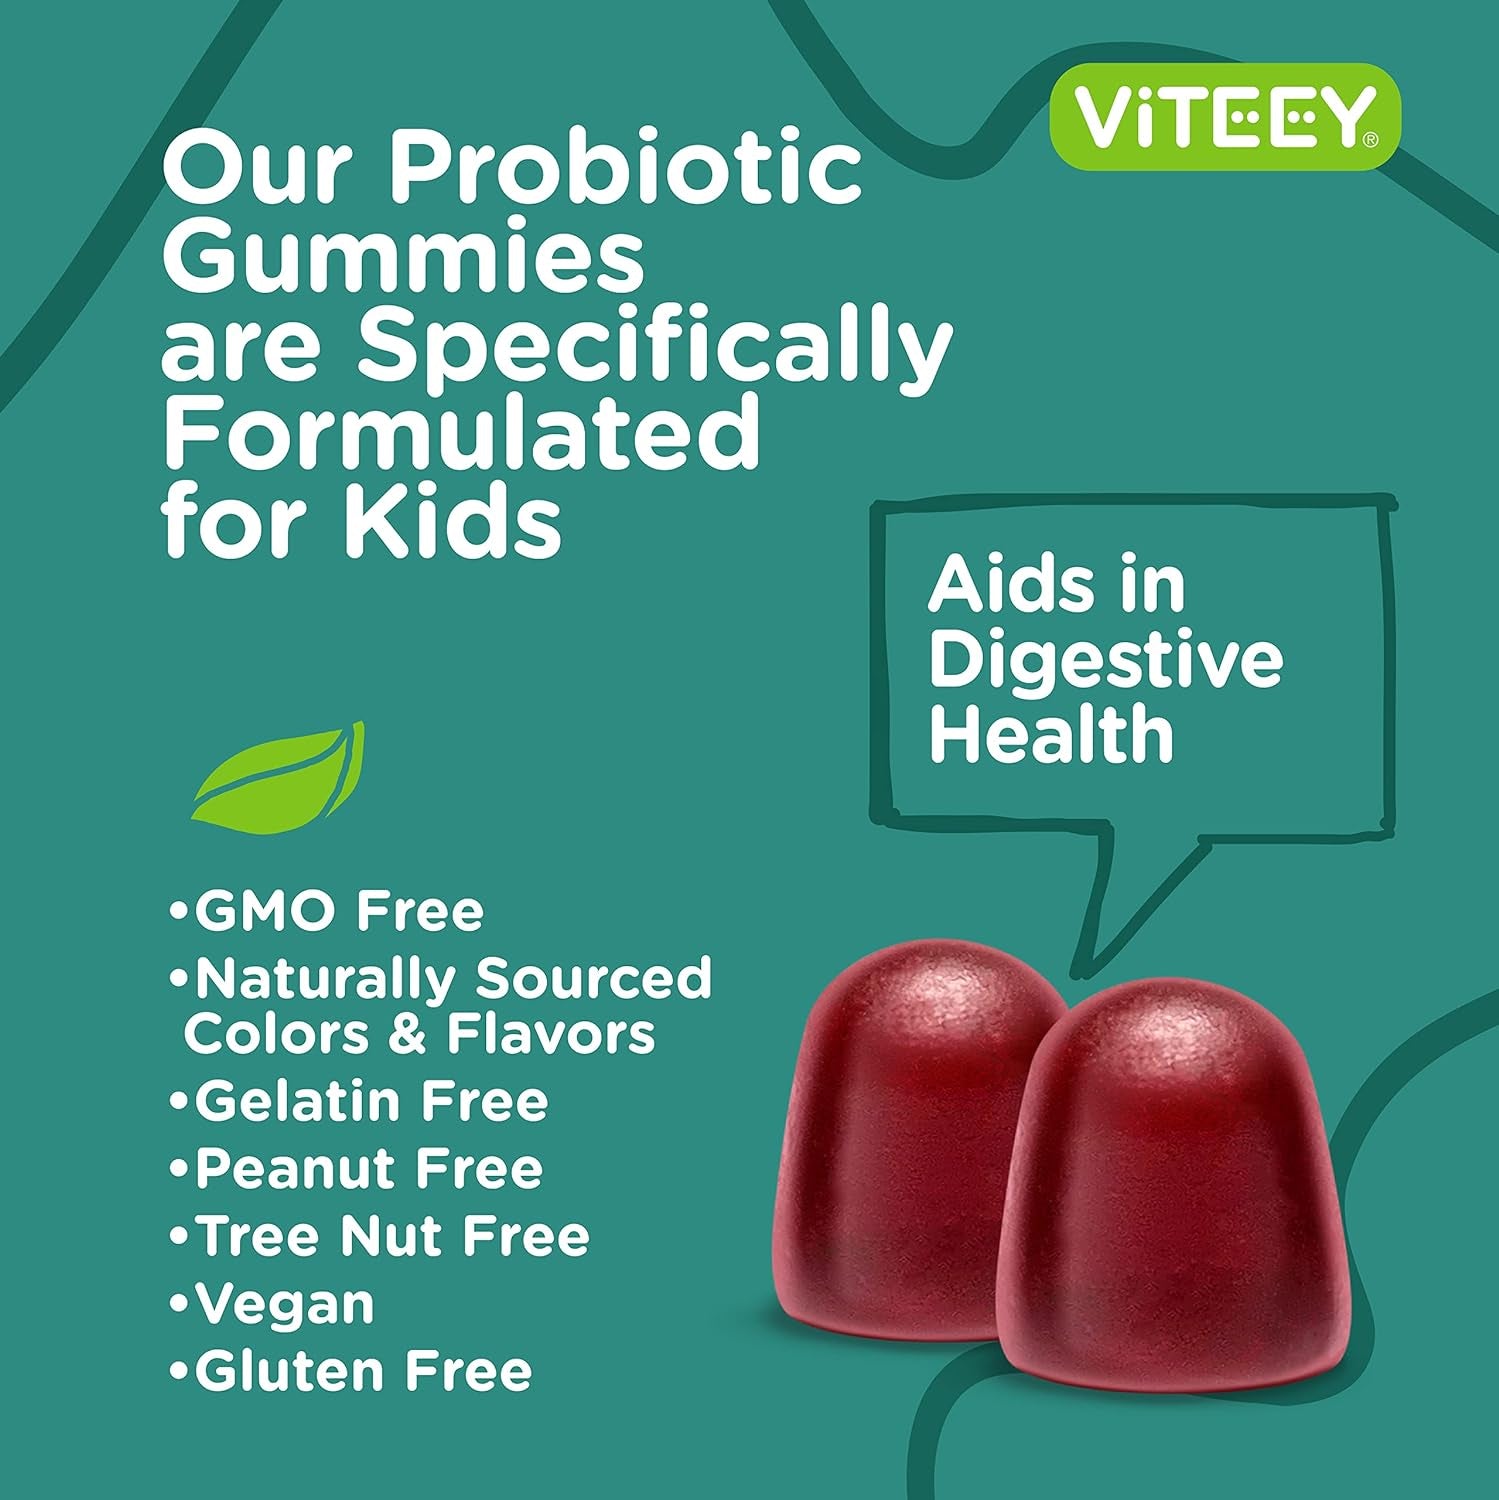 Probiotic Gummies for Kids - Sugar Free - 2 Billion CFU Probiotics for Immune Support & Digestive Support - Vegan, Non GMO, Gluten Free, Kosher - Tasty, Soft, & Chewable Raspberry Flavored Gummy